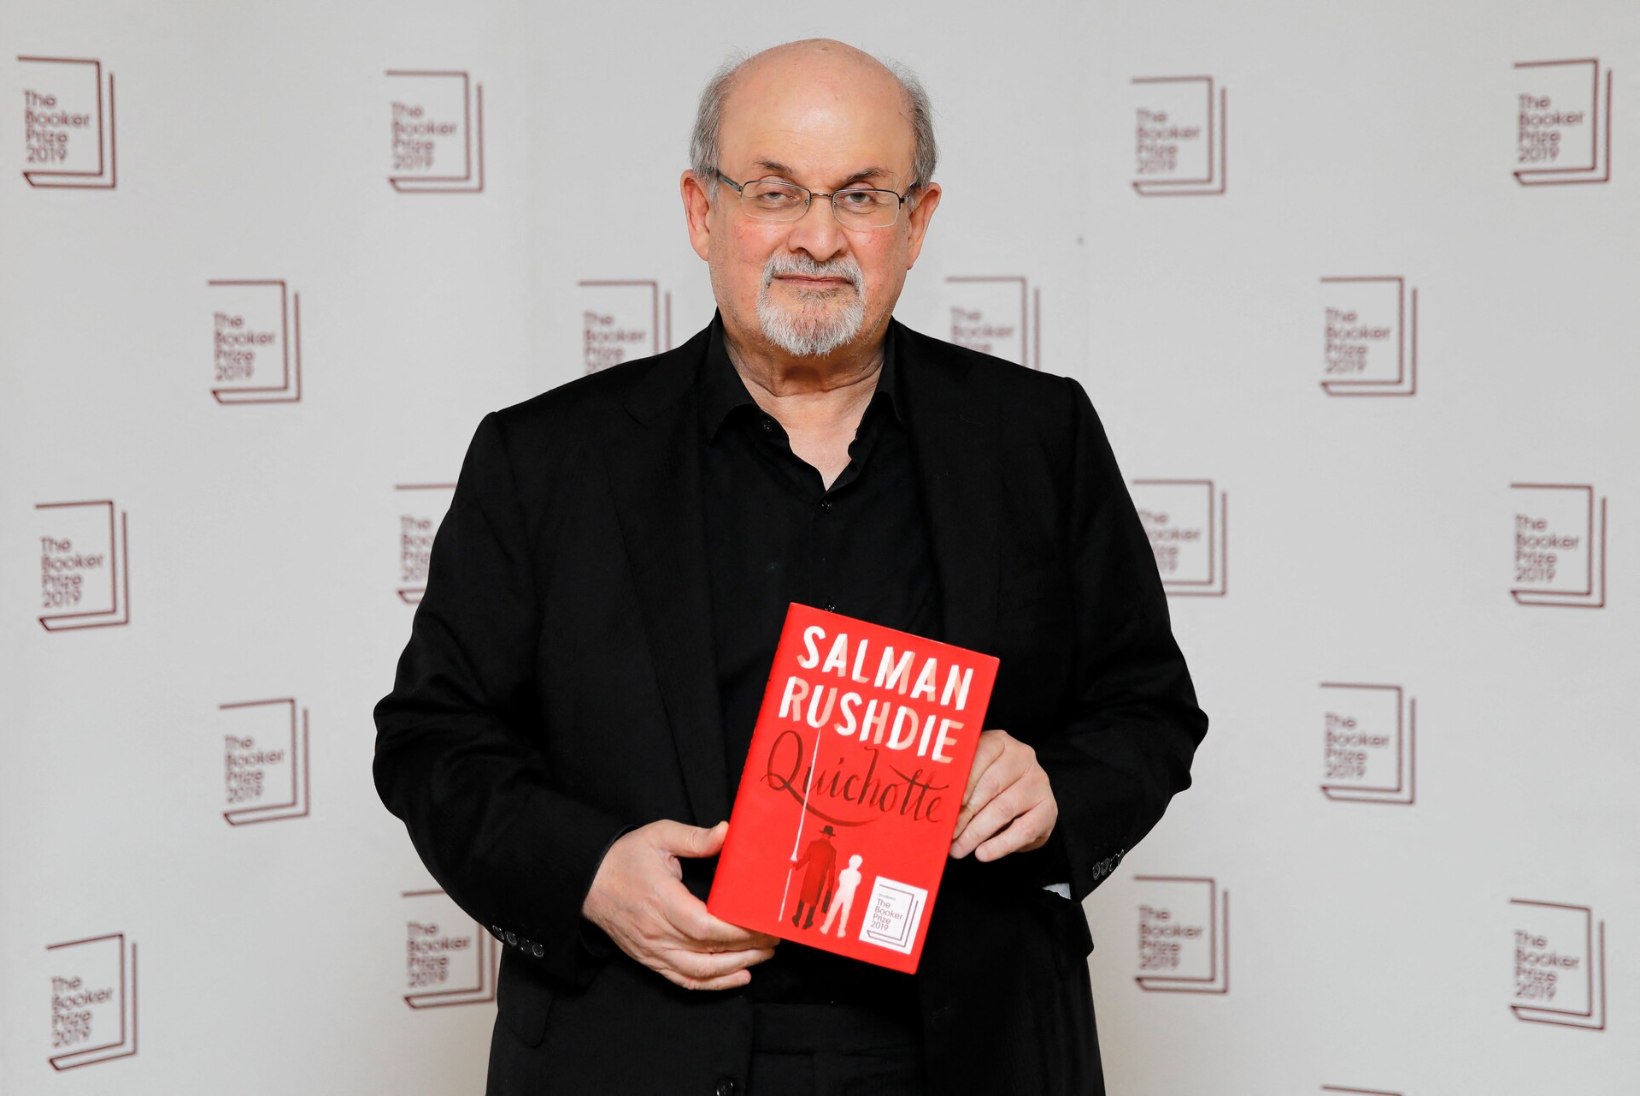 VIDEO | Pussitatud menukirjanik Salman Rushdie jääb ilmselt ühest silmast ilma